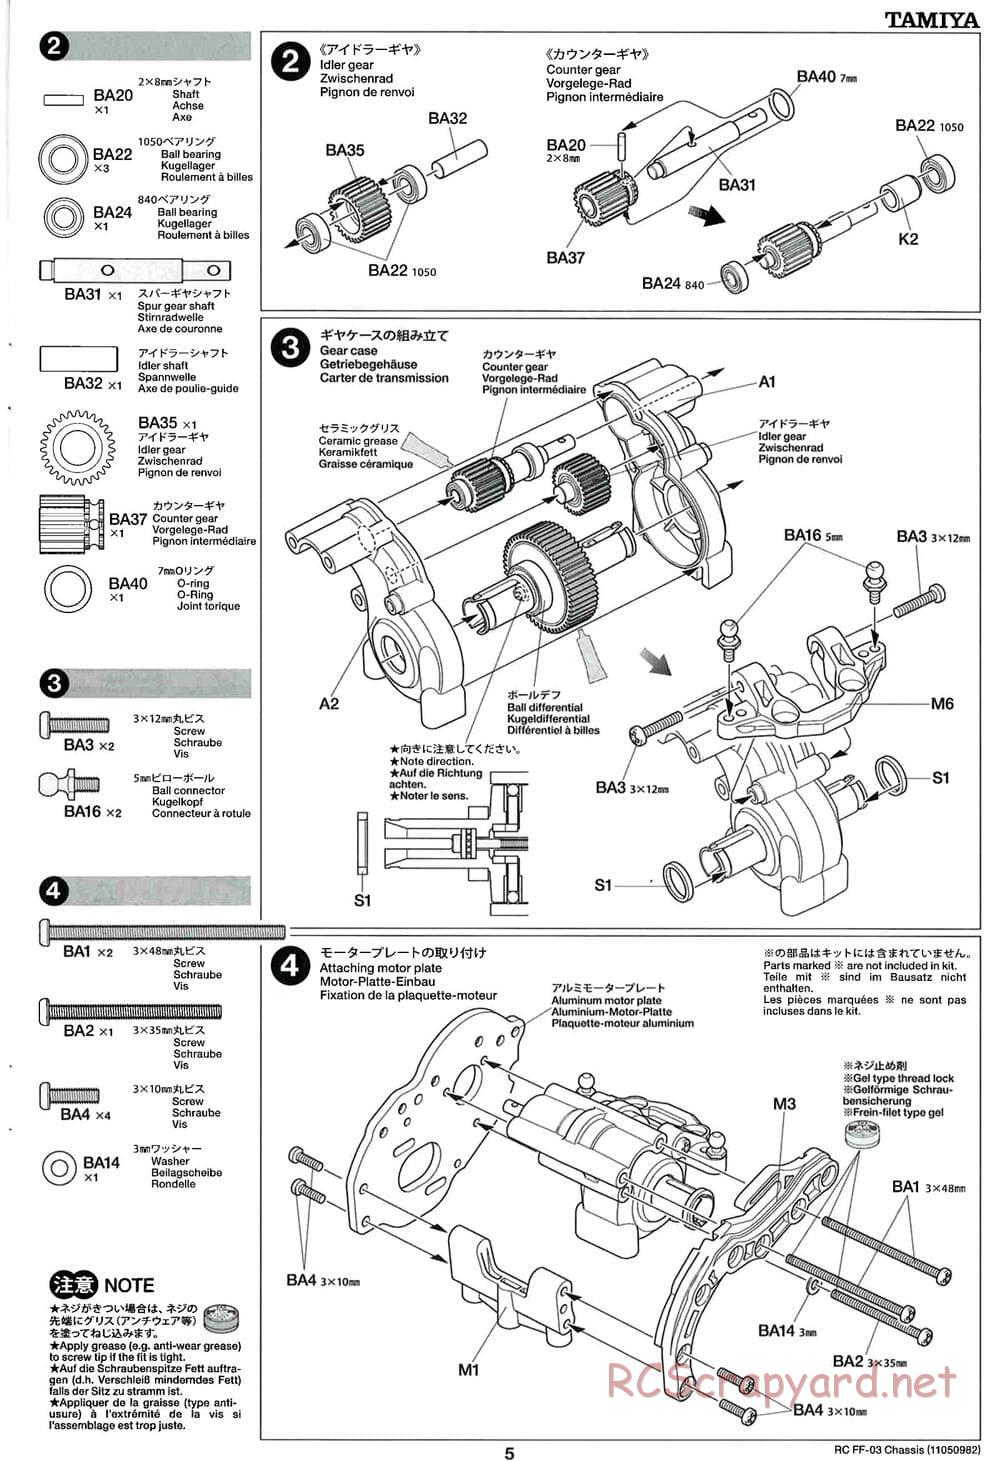 Tamiya - Honda Accord Aero Custom - FF-03 Chassis - Manual - Page 5